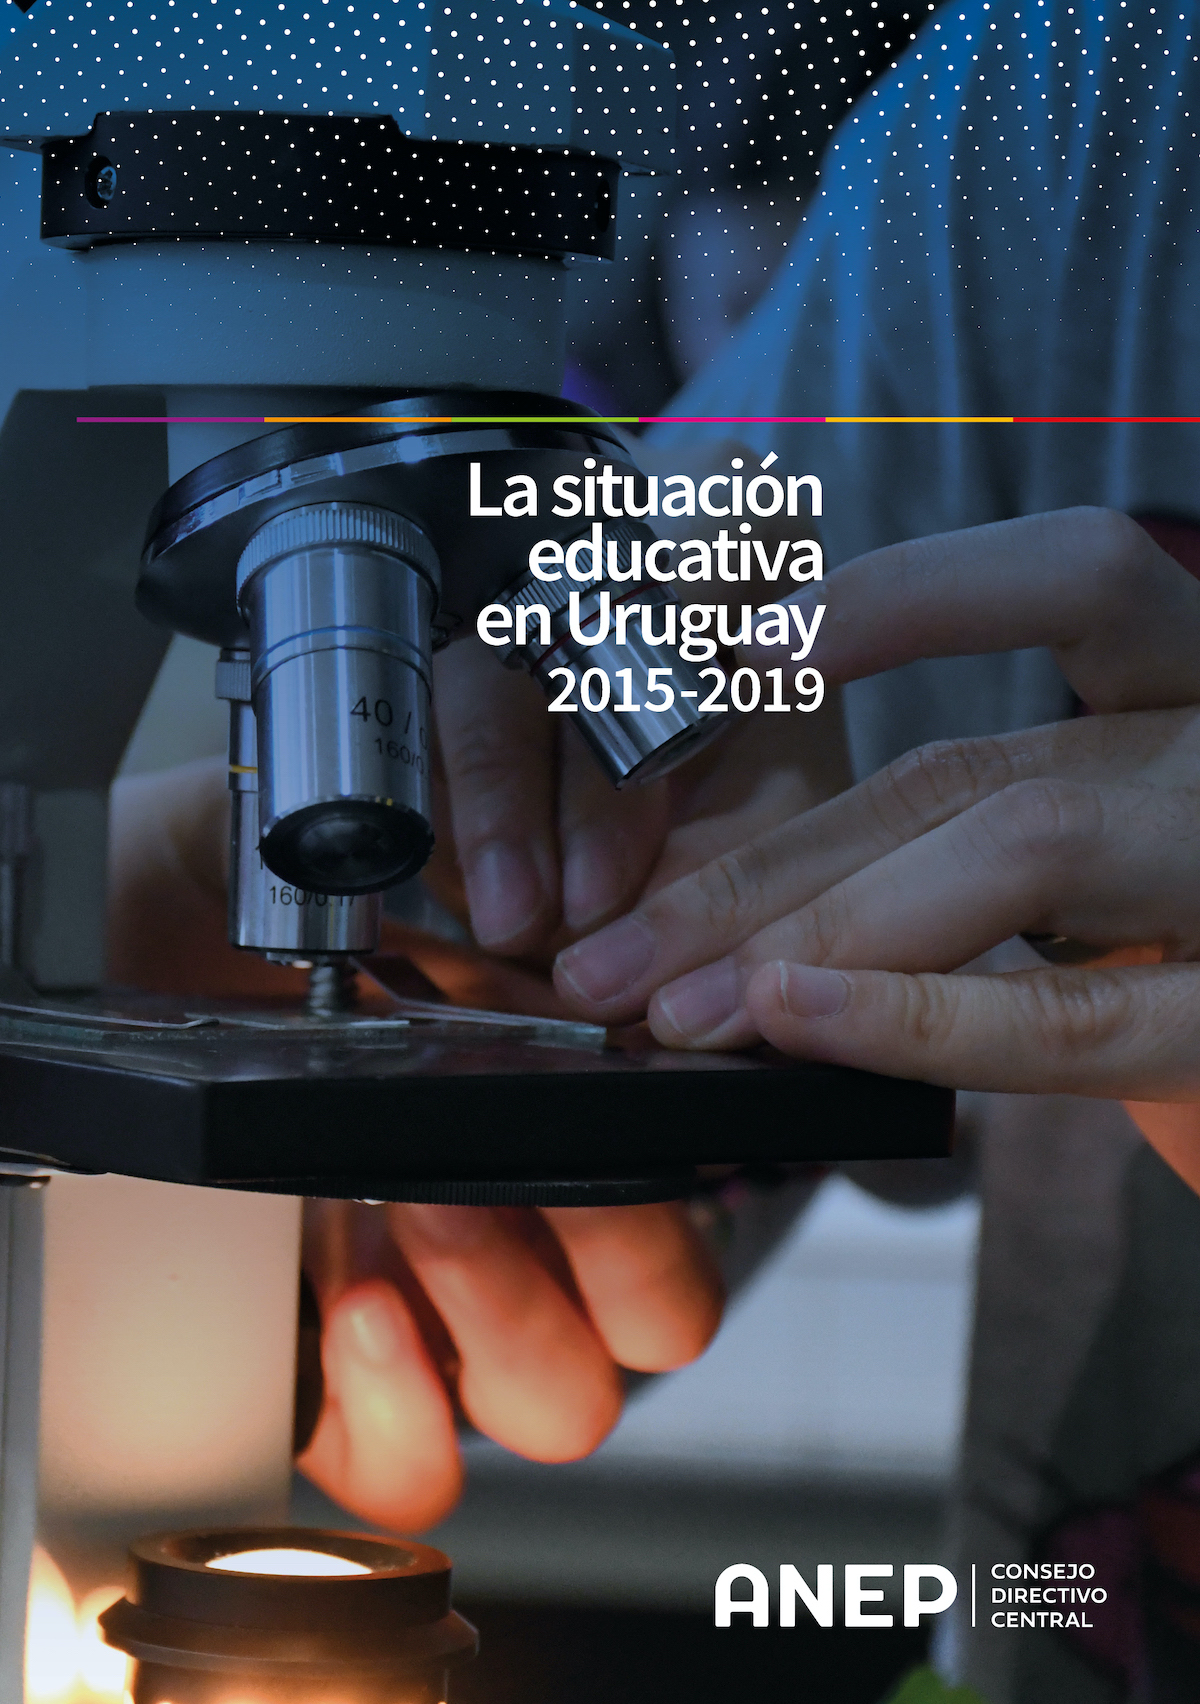 La situación educativa en Uruguay